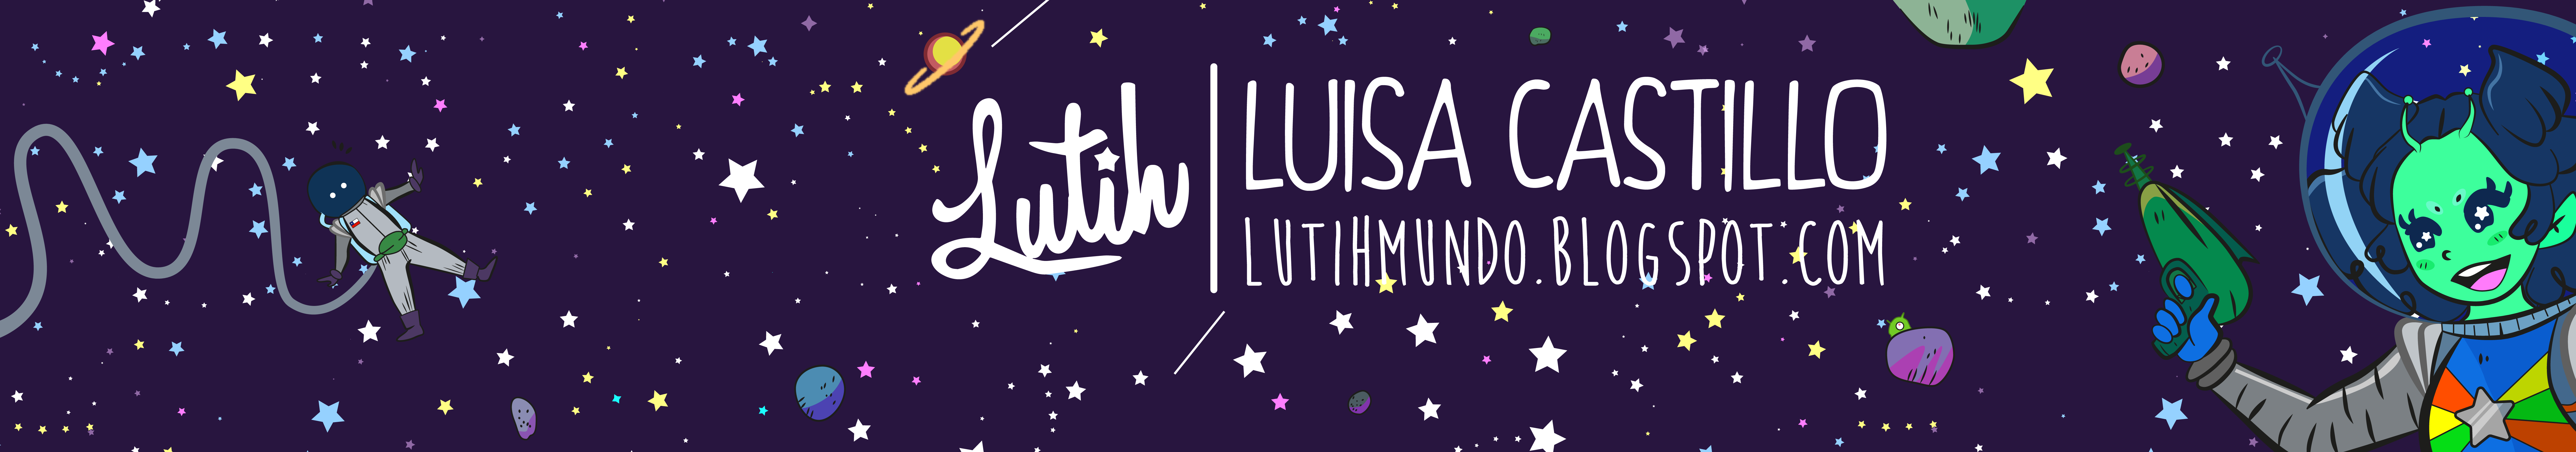 Luisa Castillo profil başlığı